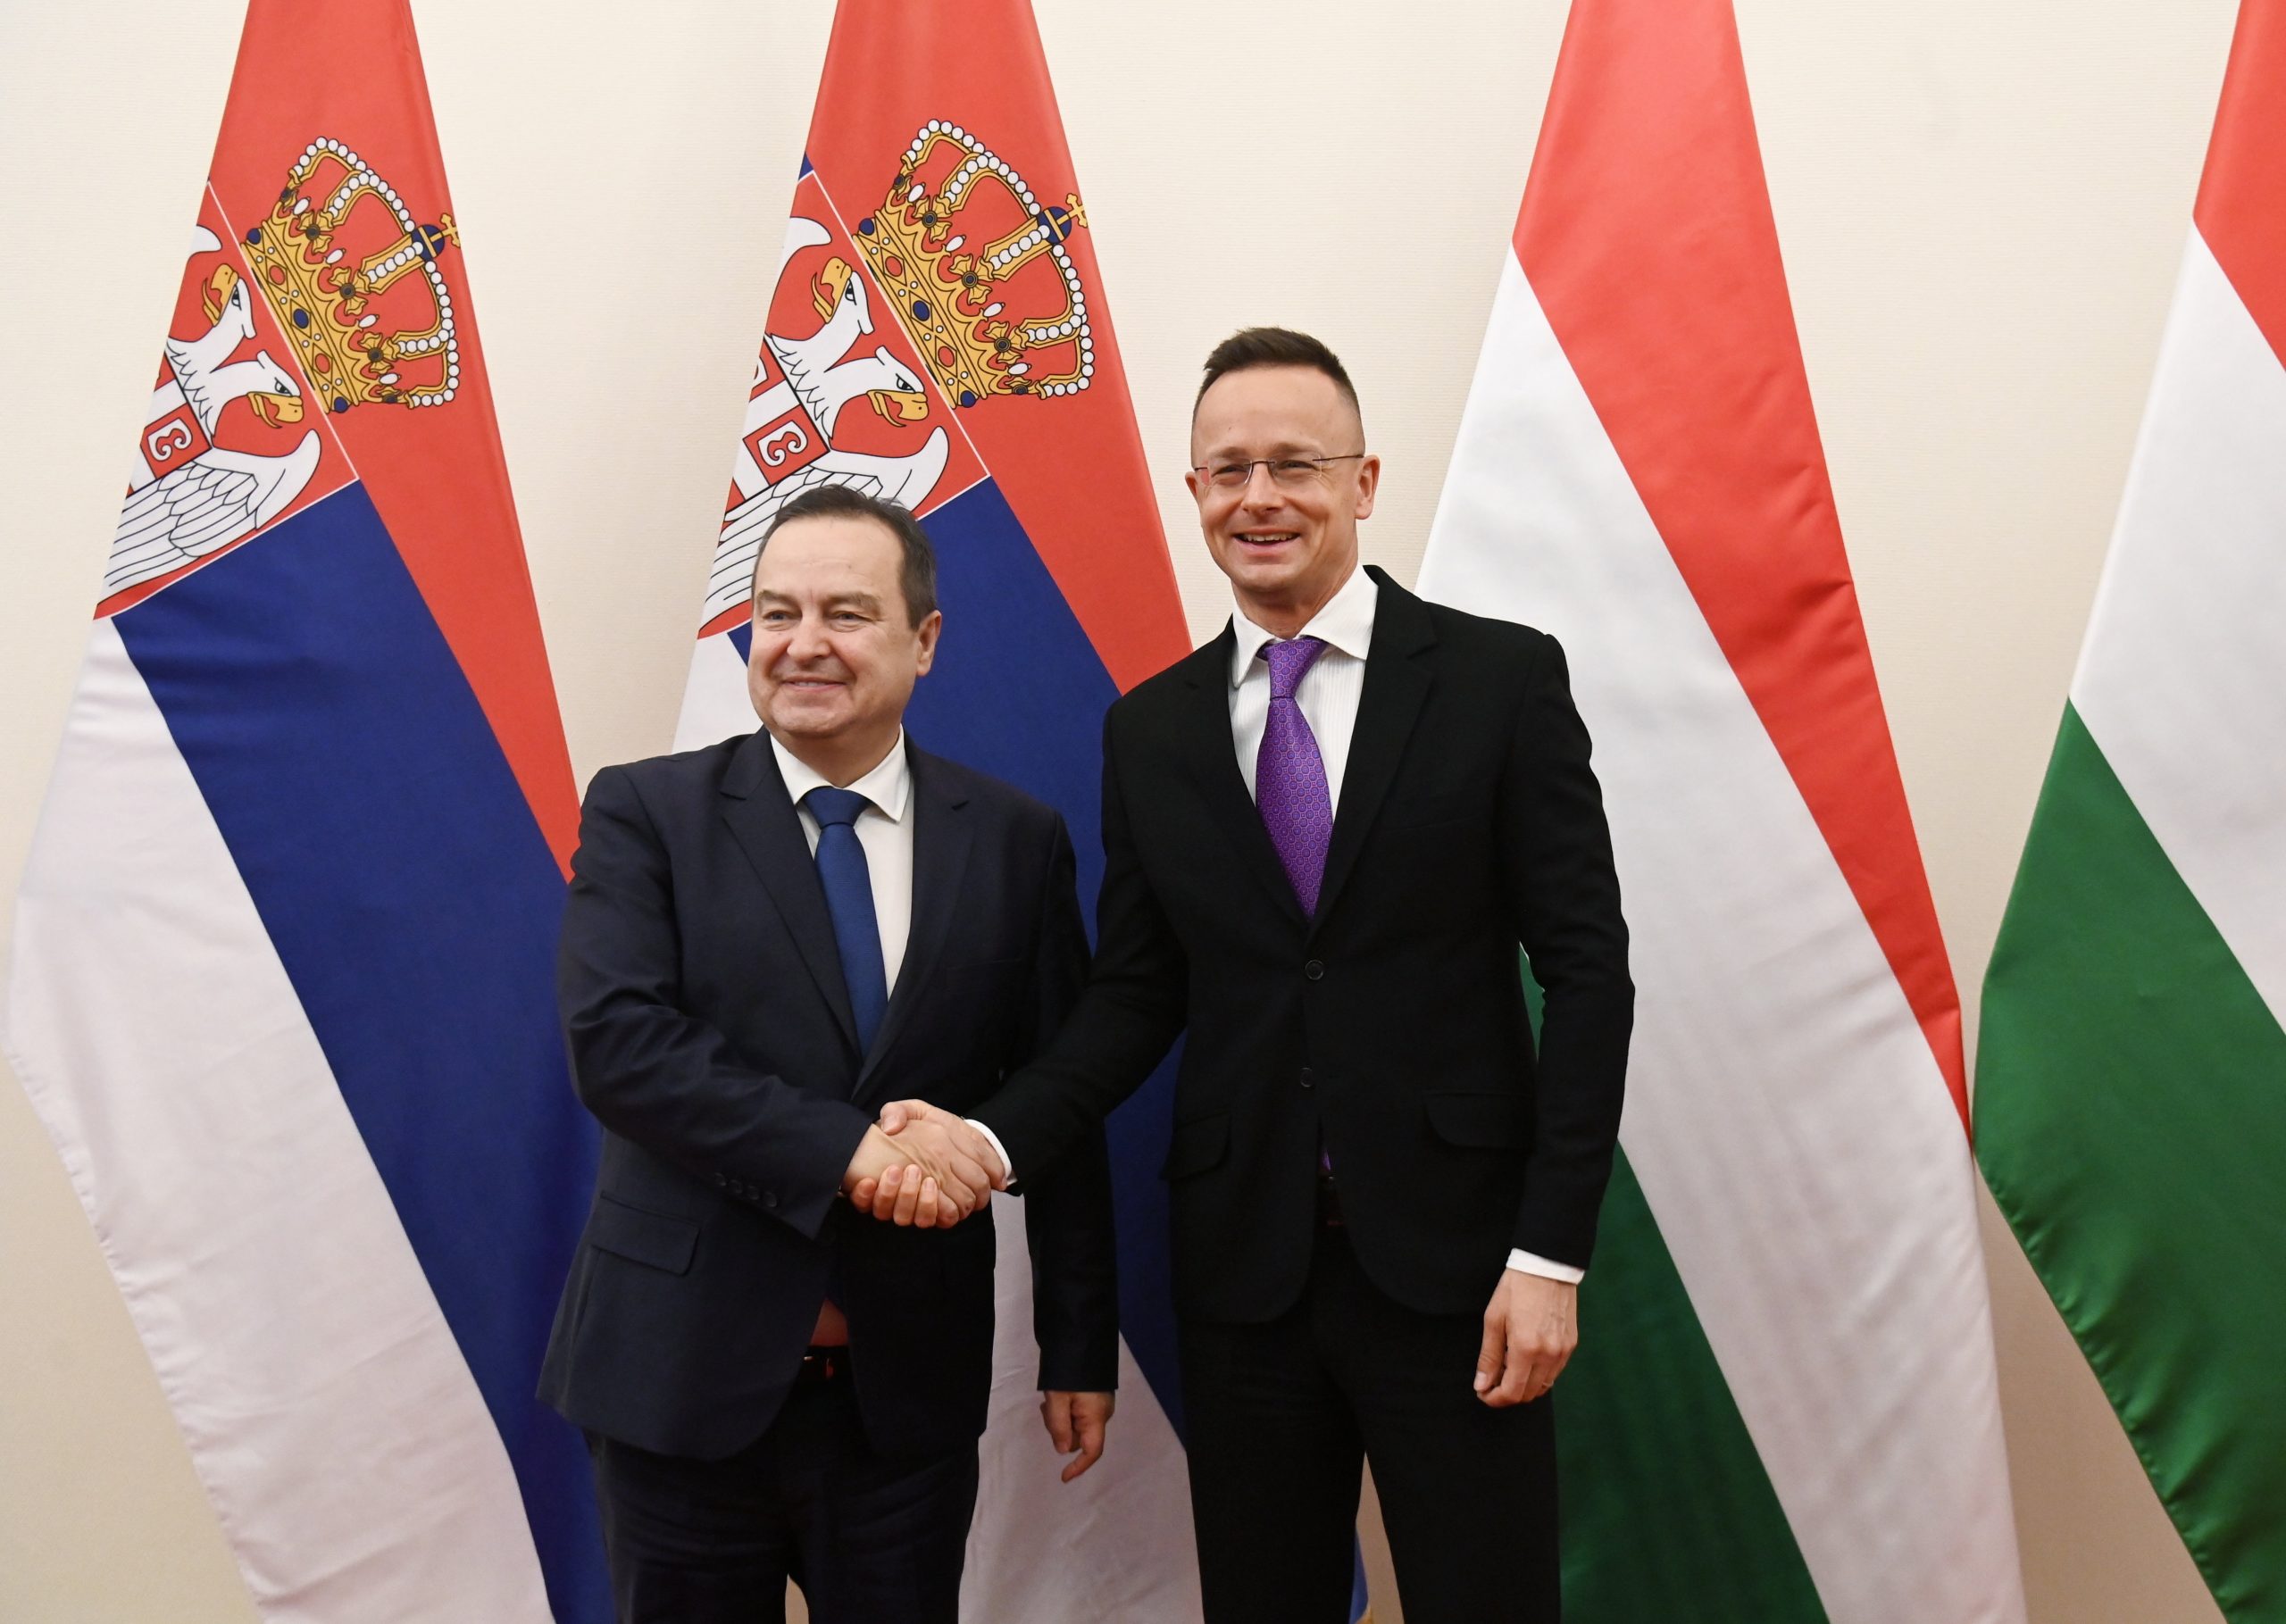 Der Schlüssel zur ungarischen Energiesicherheit liegt in Serbien